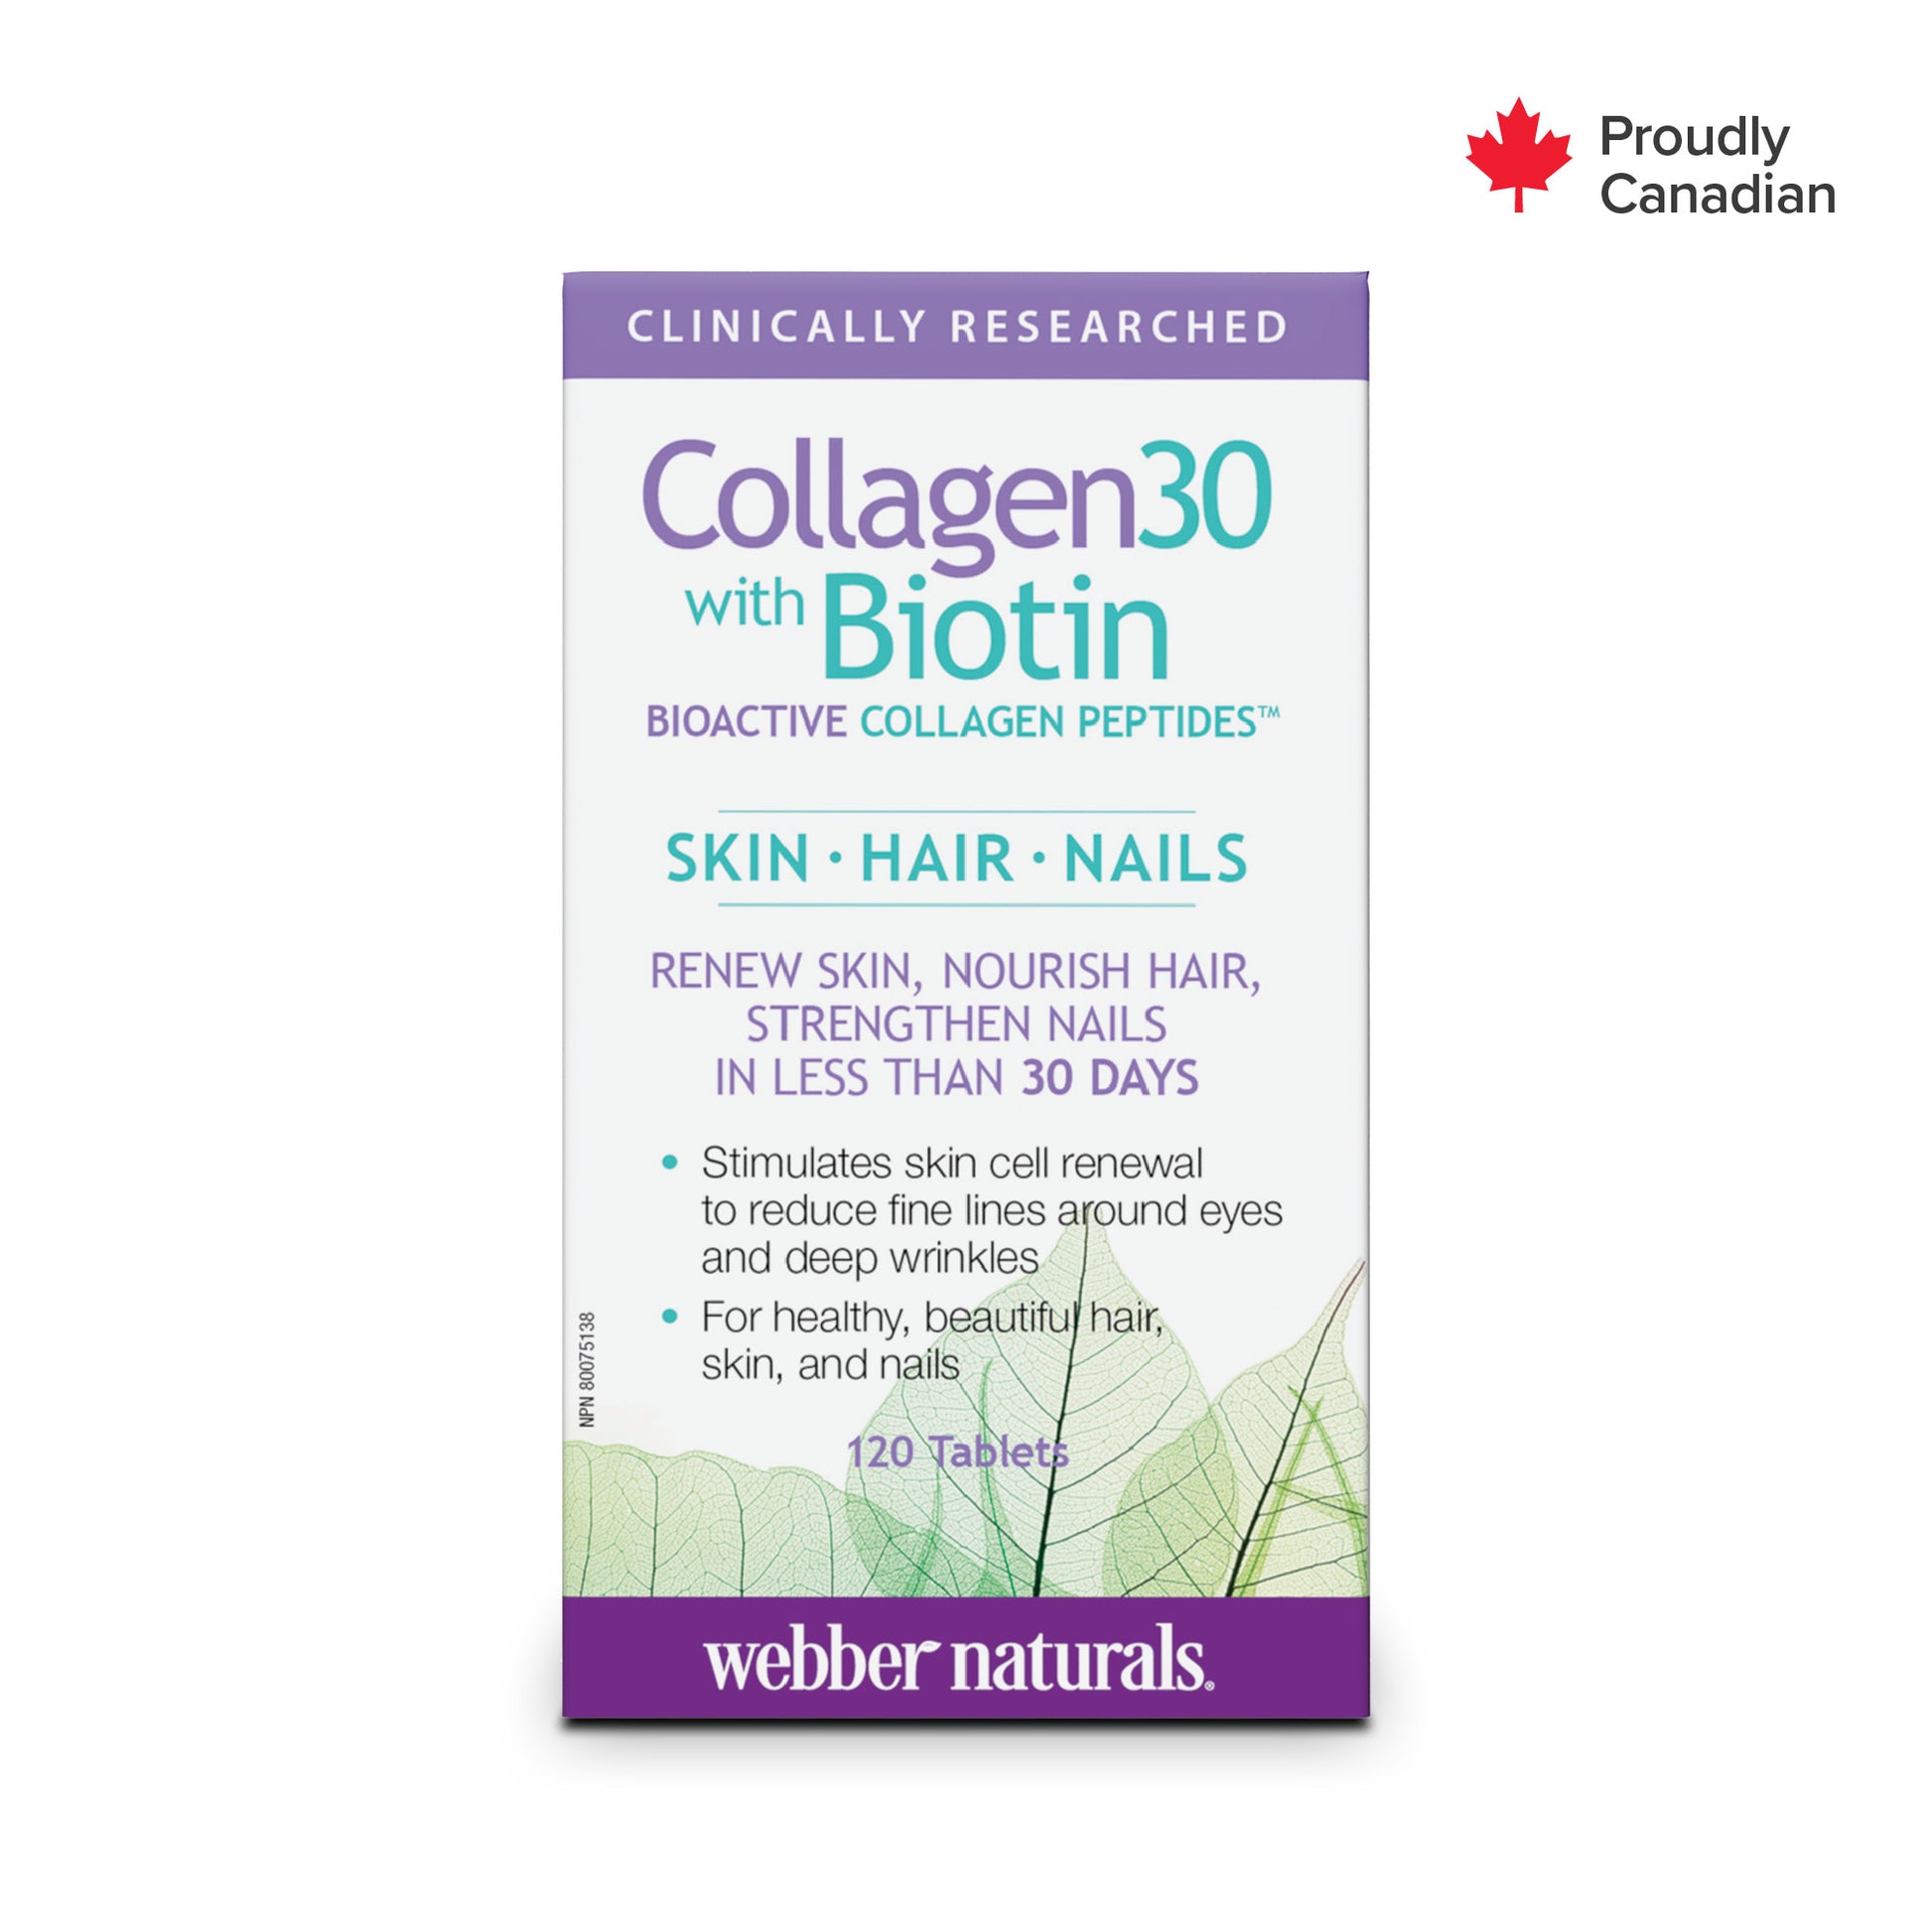 Collagen30® with Biotin Bioactive Collagen Peptides for Webber Naturals|v|hi-res|WN3668